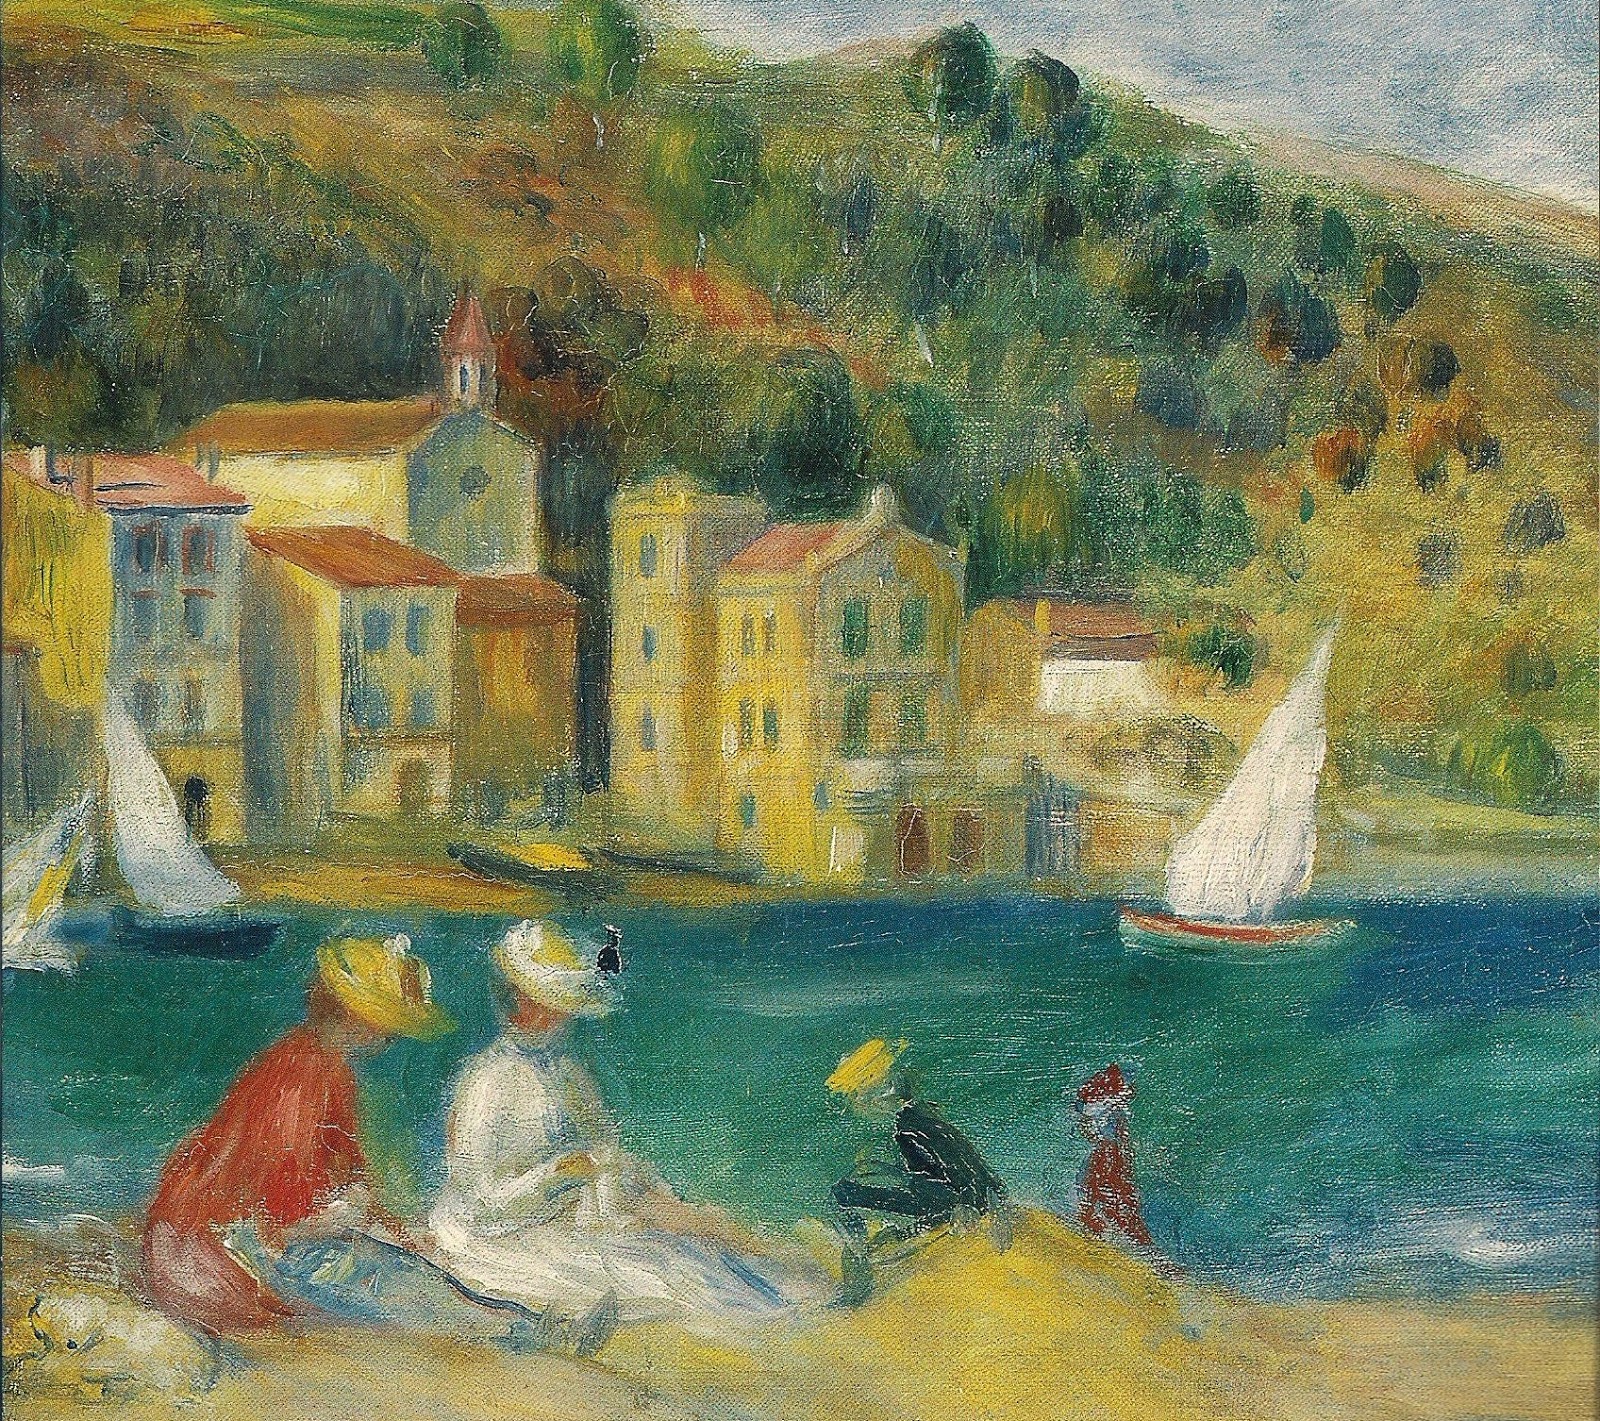 Pierre+Auguste+Renoir-1841-1-19 (825).jpg